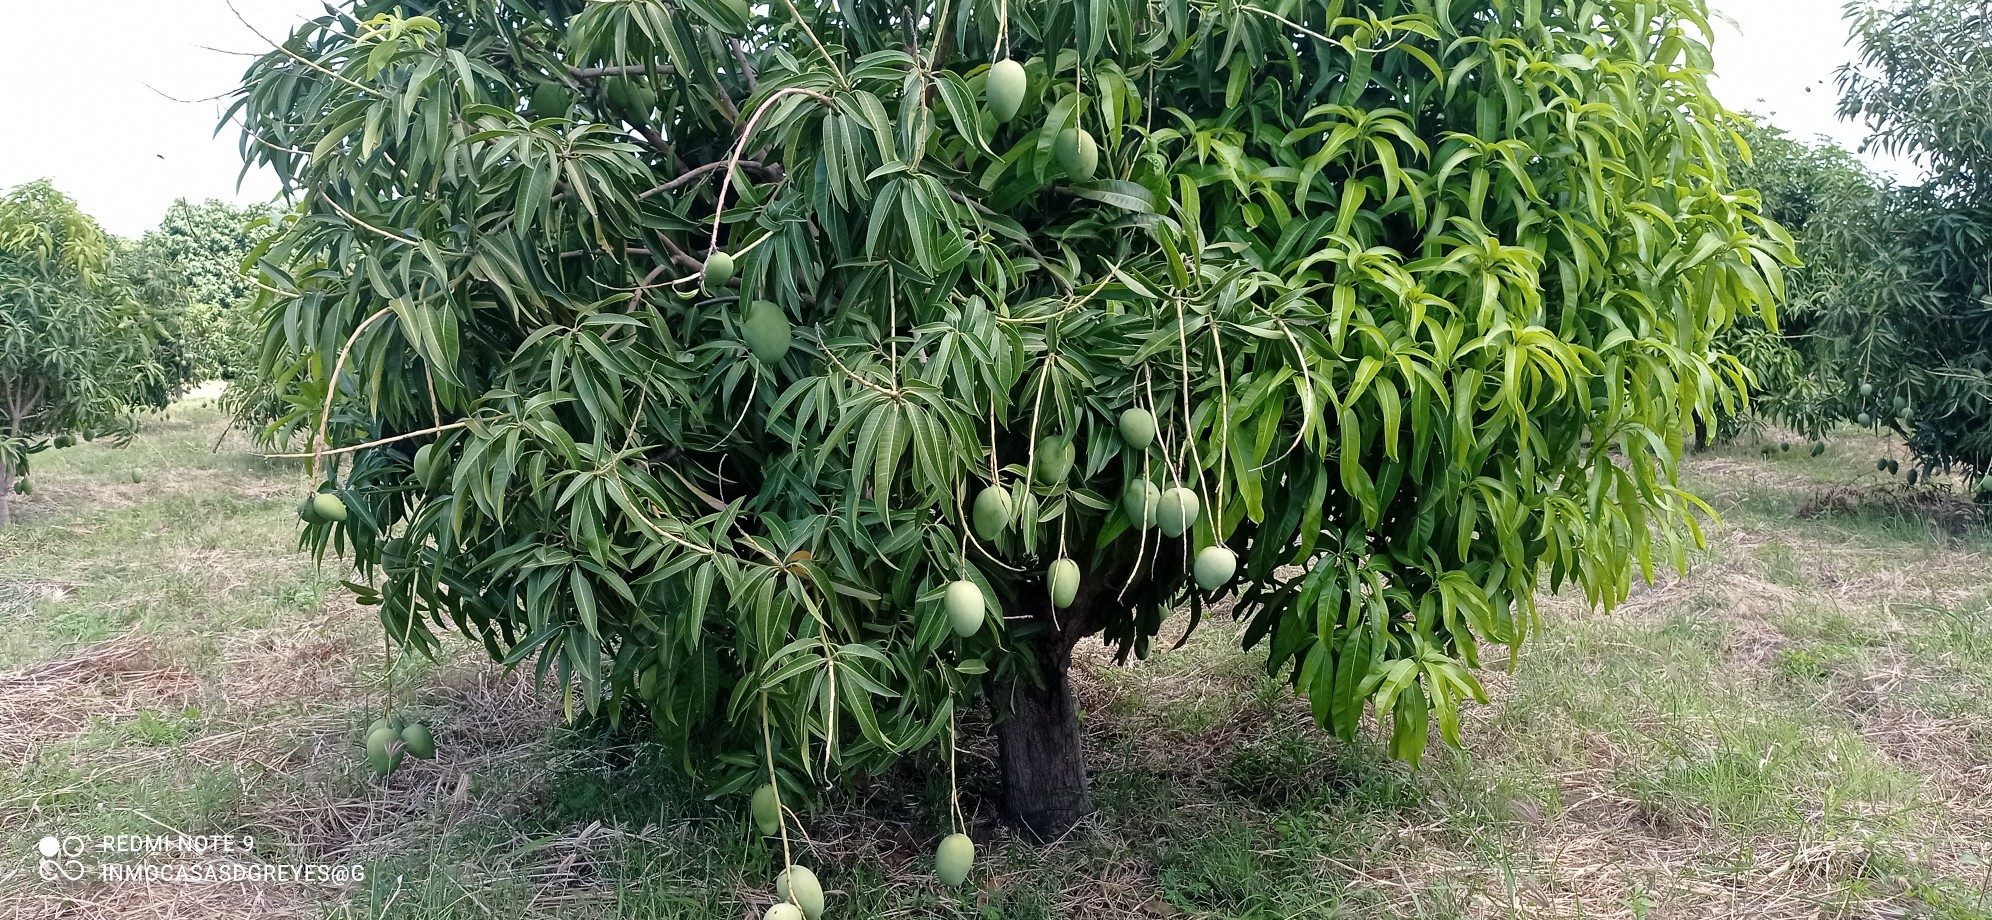 solares y terrenos - Se vende finca de mango en la provincia peravía.